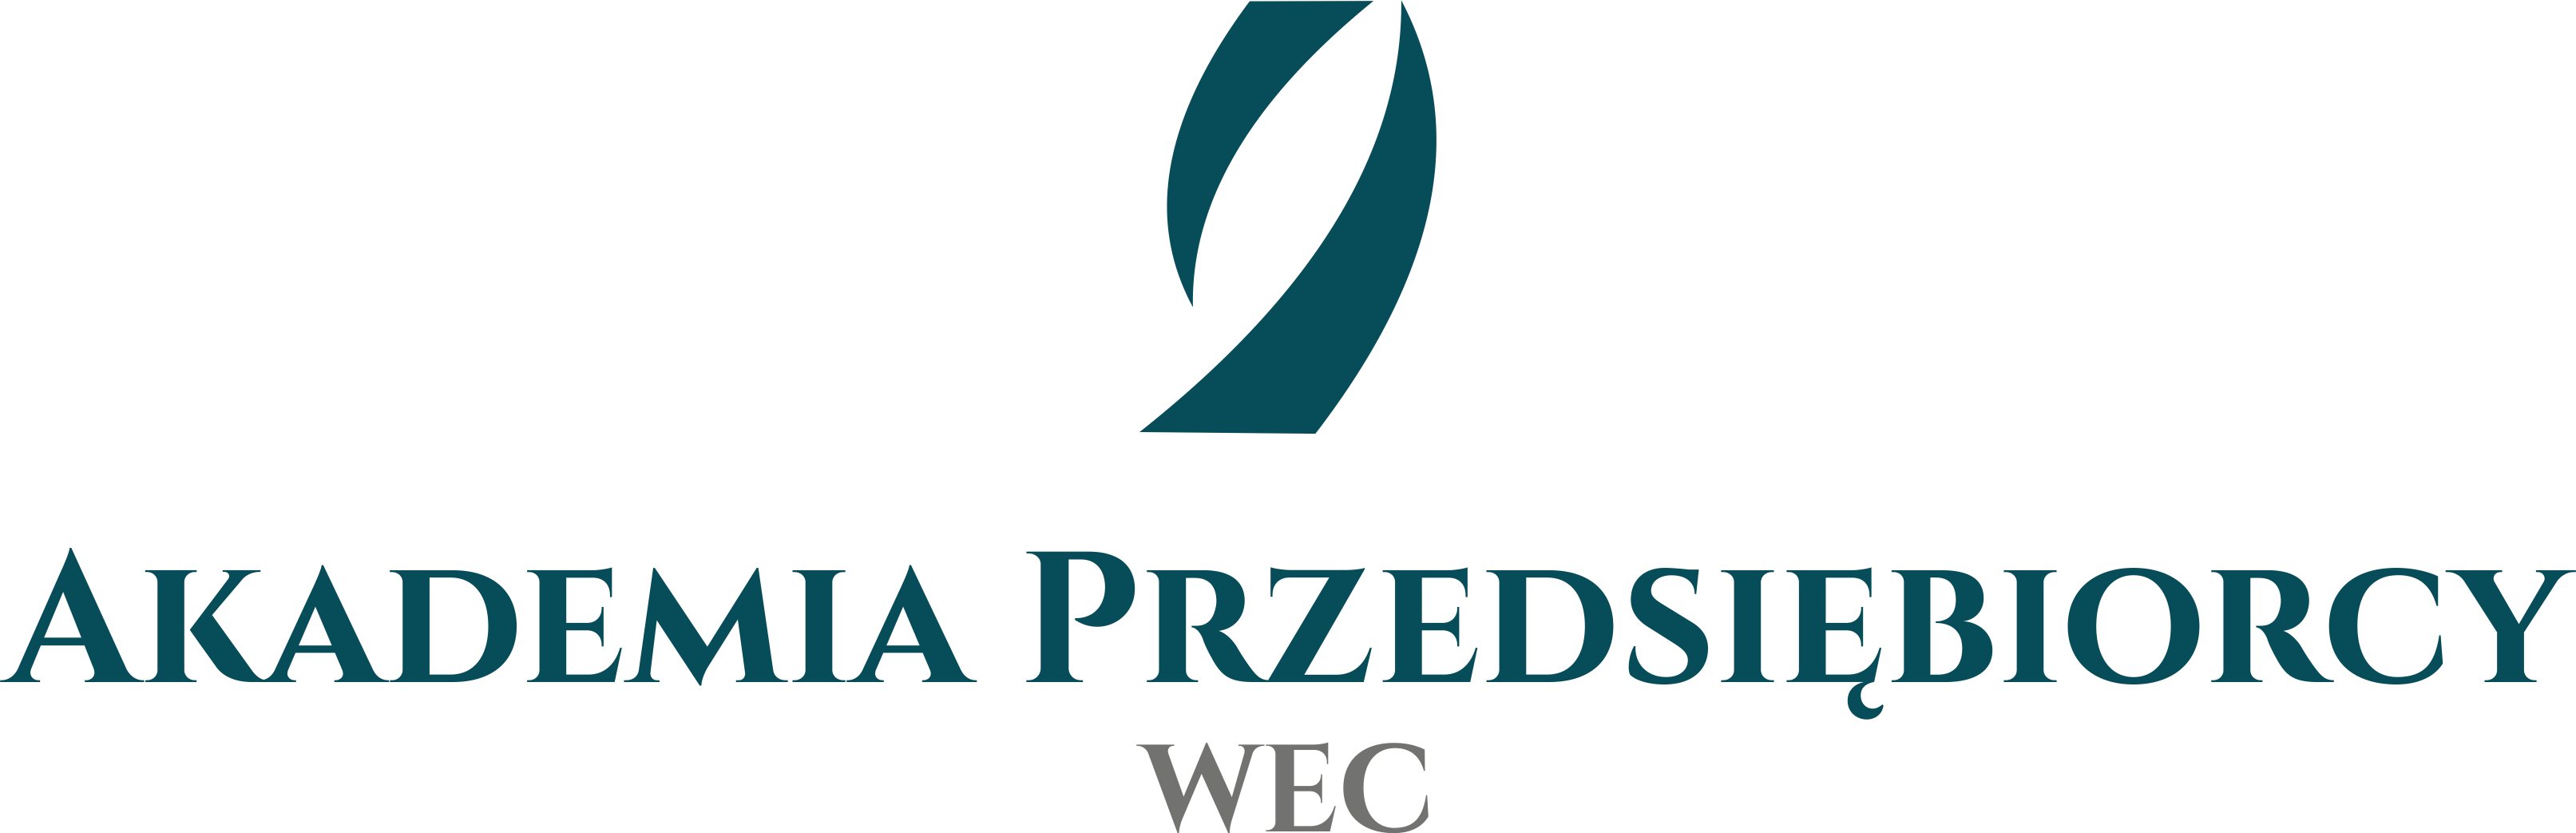 REWIDENCI WEC, GIEŁDA DŁUGÓW - Akademia Przedsiębiorcy - Szkolenia windykacyjne, prawne